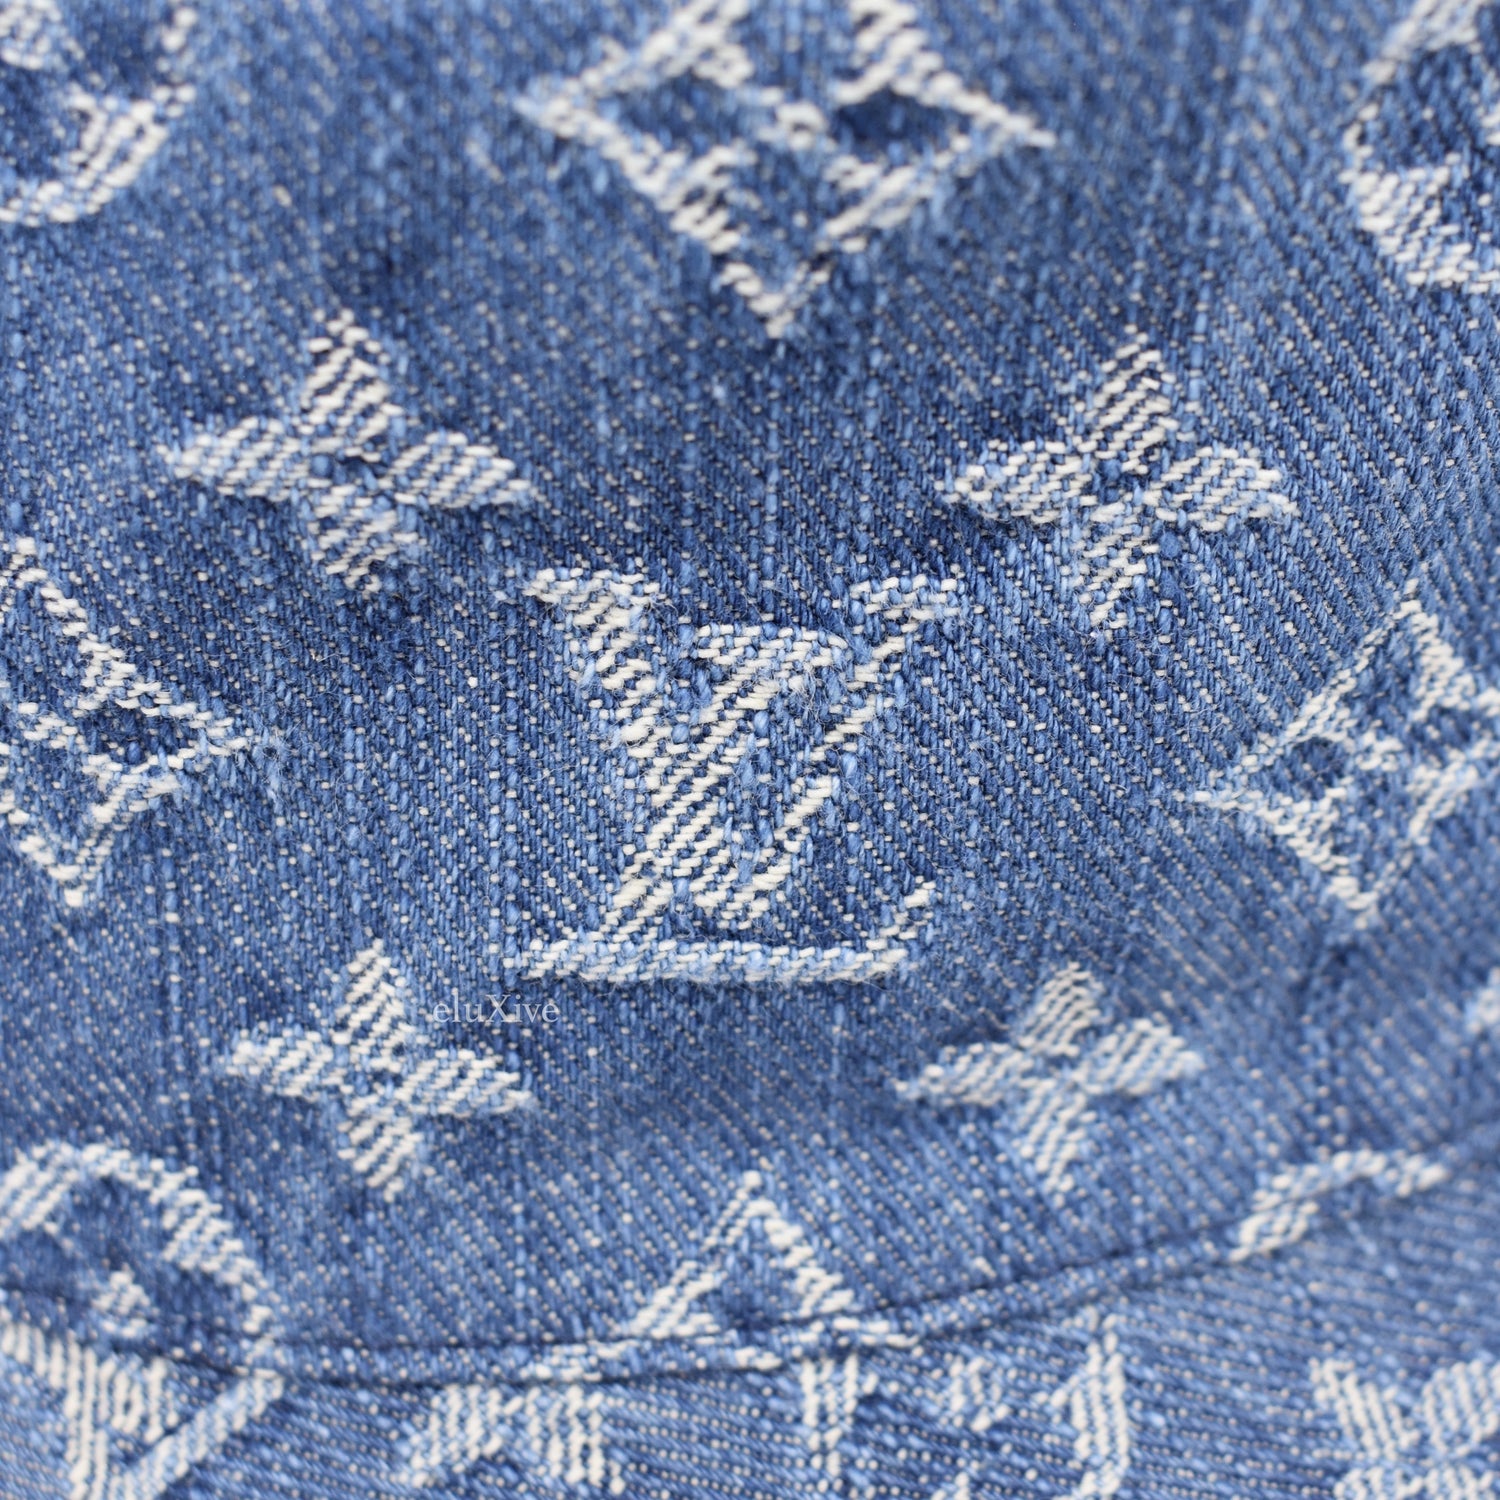 Louis Vuitton - Monogram Denim Woven Bucket Hat (Blue) – eluXive